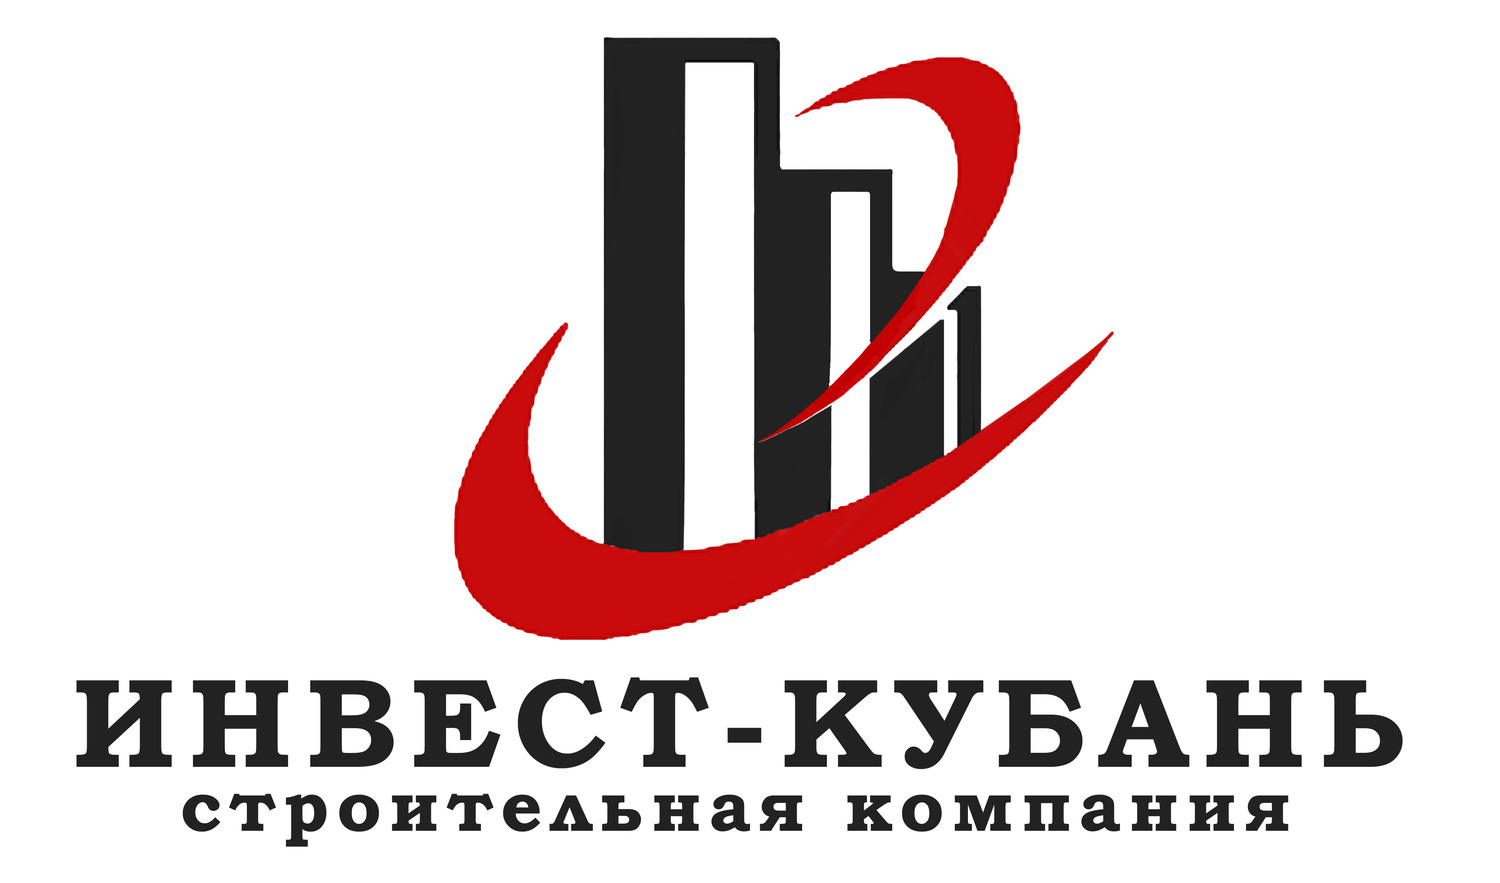 Застройщик Инвест Кубань в Краснодаре | Реальные отзывы, информация о компании, рейтинг застройщика на сайте Мореон Инвест